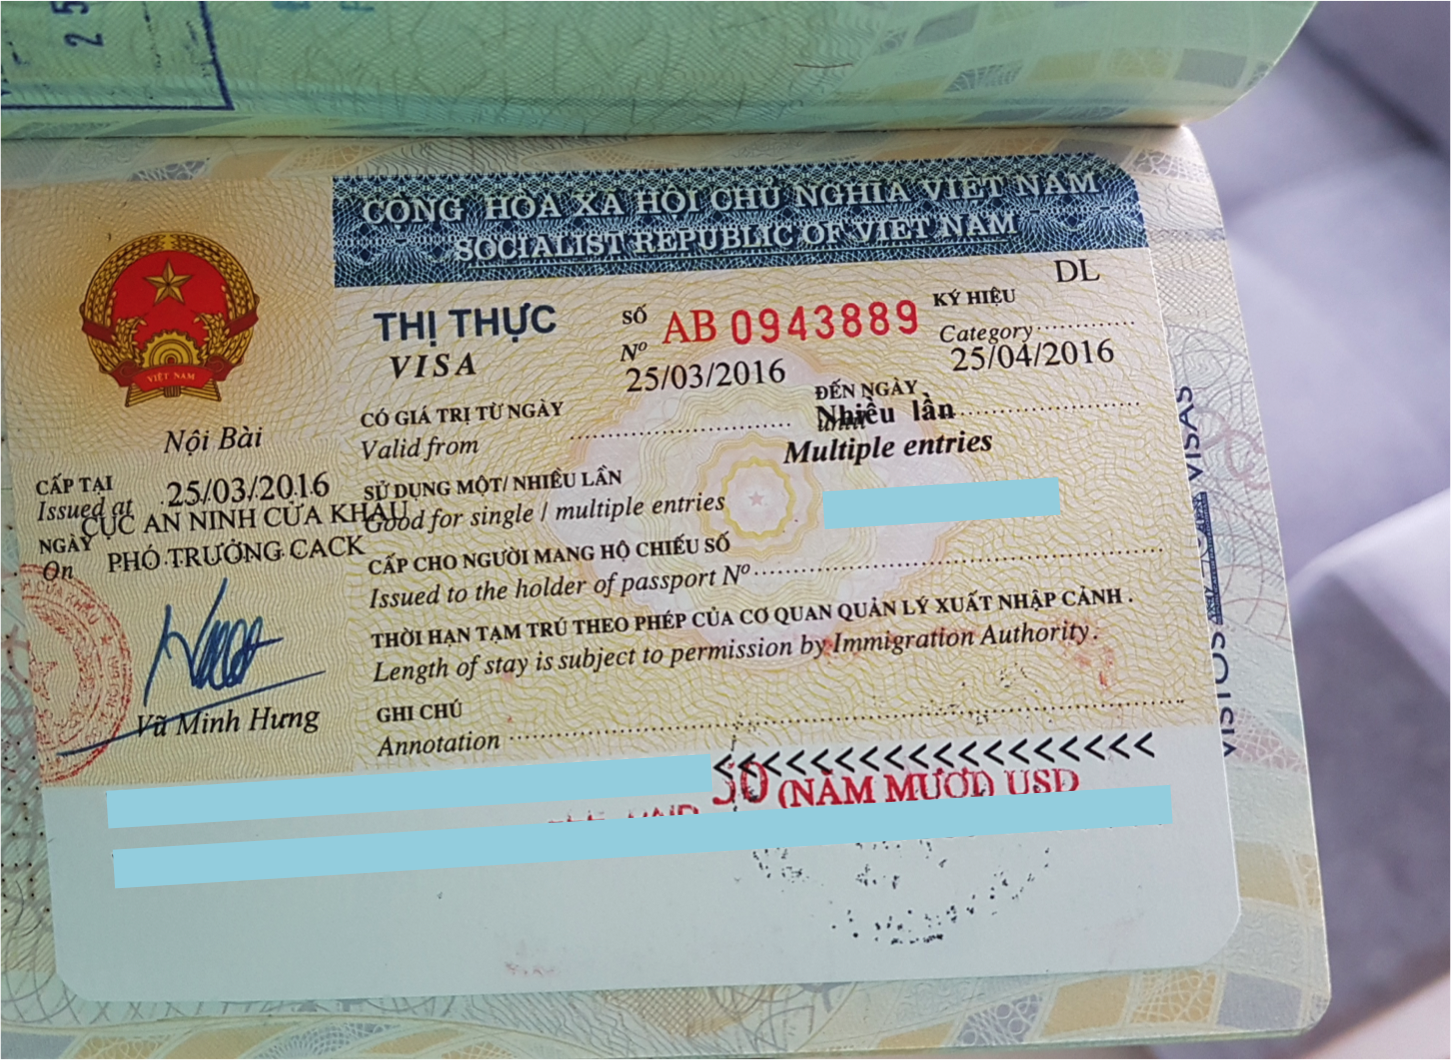 Visto do Vietnã emitido no aeroporto e colado no passaporte do meu marido (Vietnam Visa On Arrival)